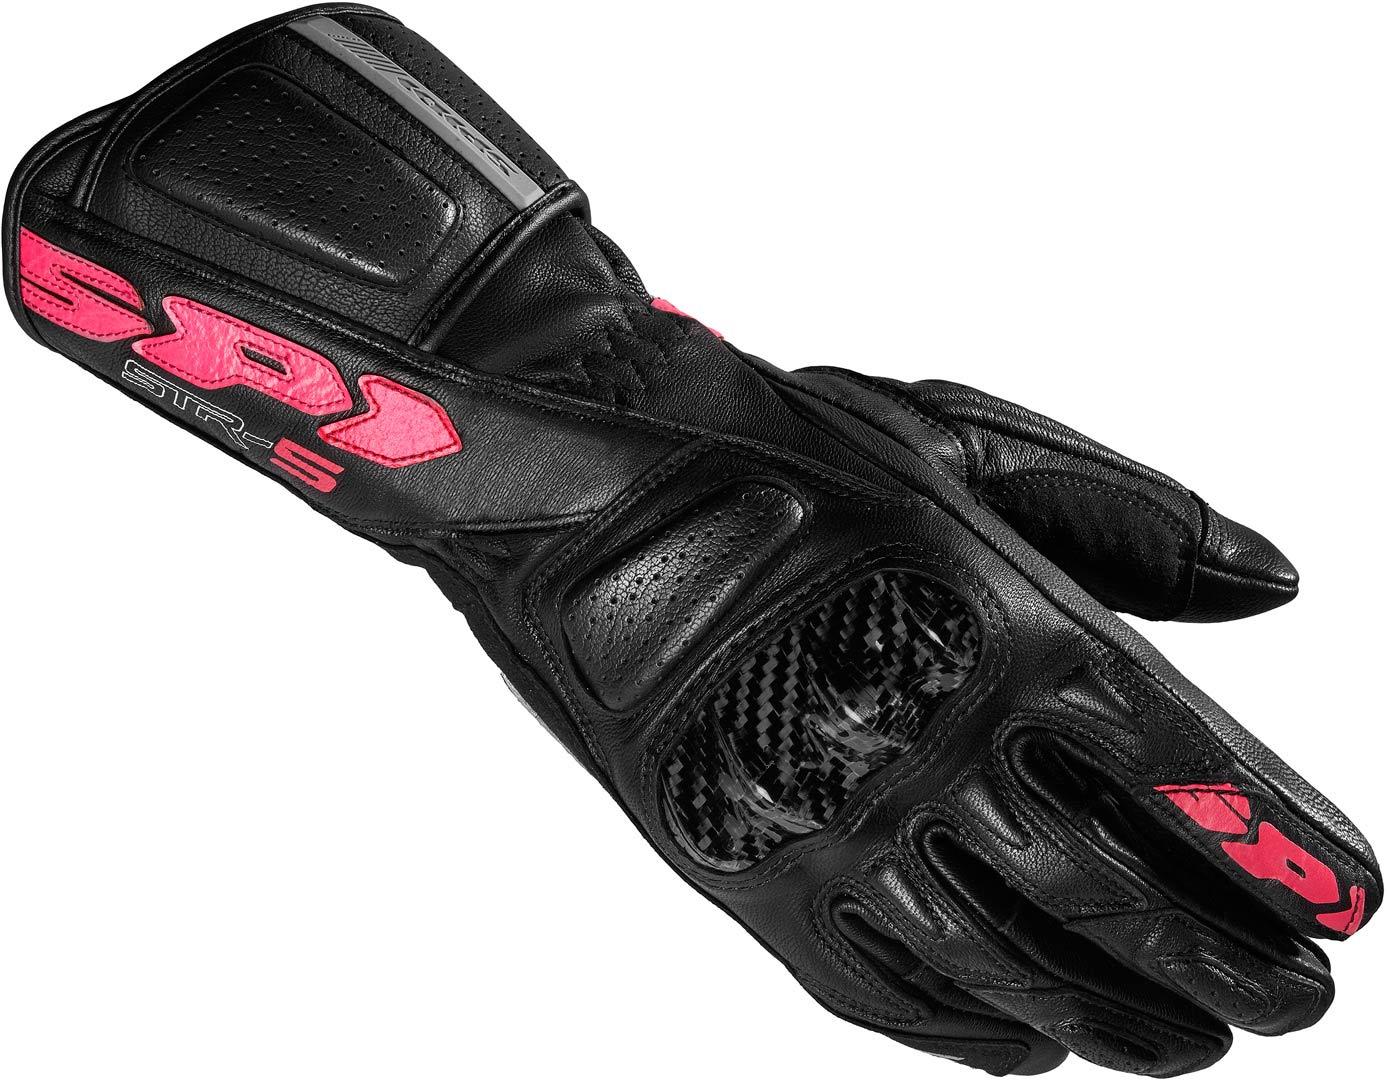 Spidi STR-5 Ladies Motorcycle Gloves, black-pink, Size XL for Women, black-pink, Size XL for Women